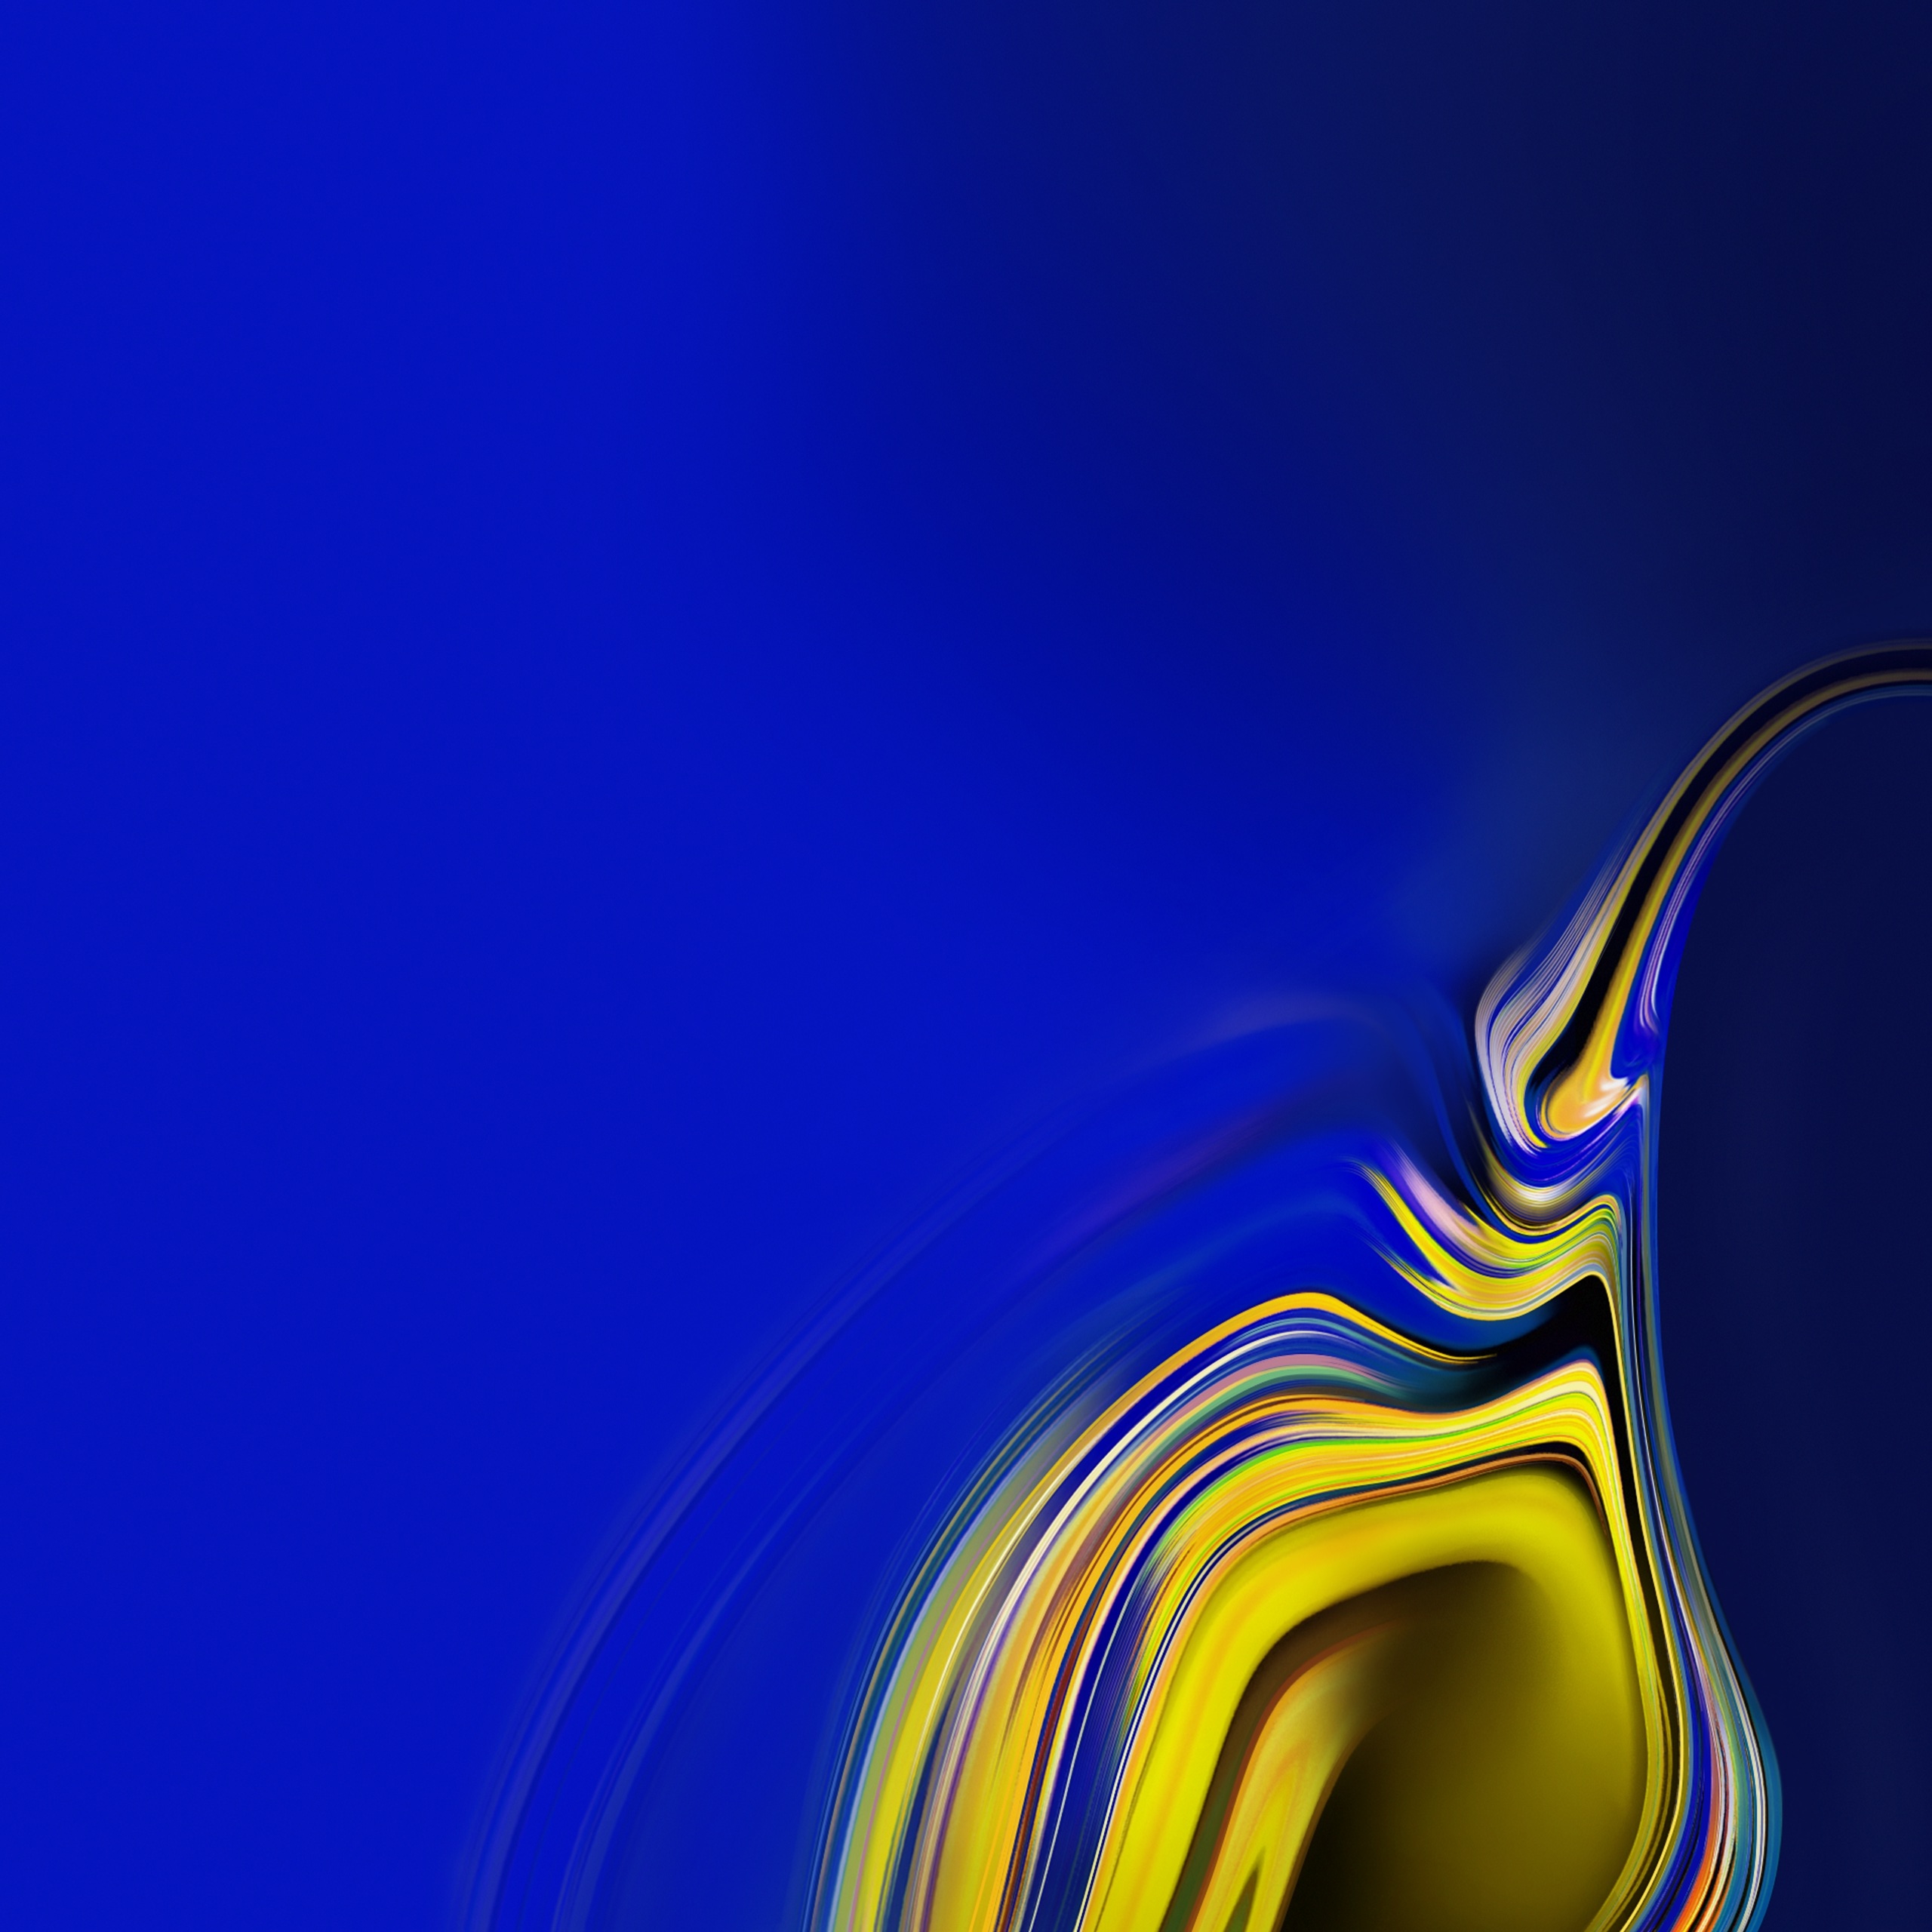 samsung galaxy wallpaper,blue,cobalt blue,yellow,water,electric blue